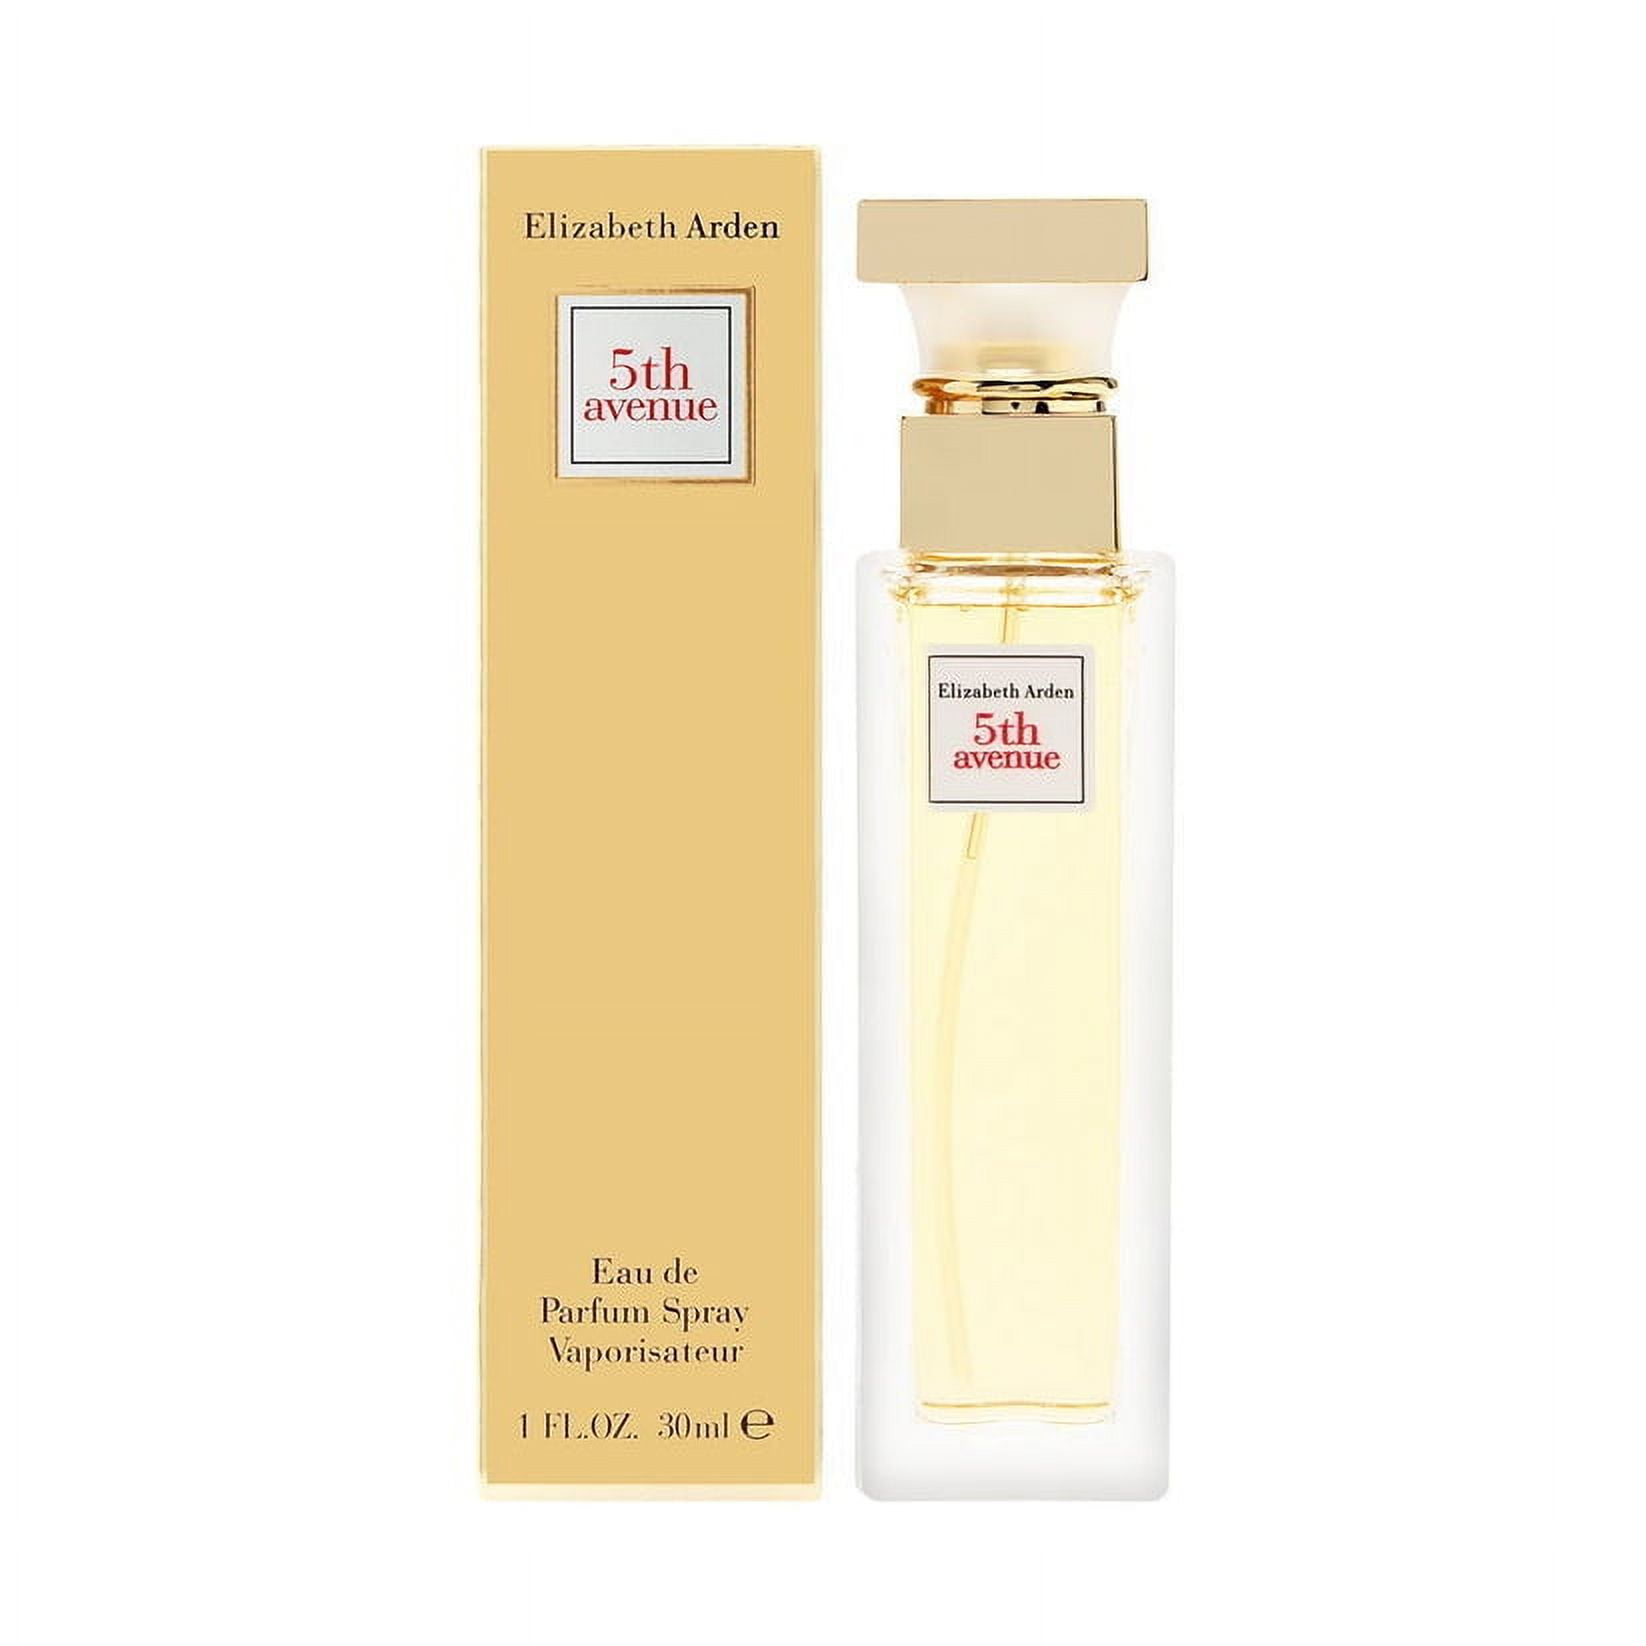 Perfume Elizabeth Arden 5th Avenue 125ml Original — Electroventas